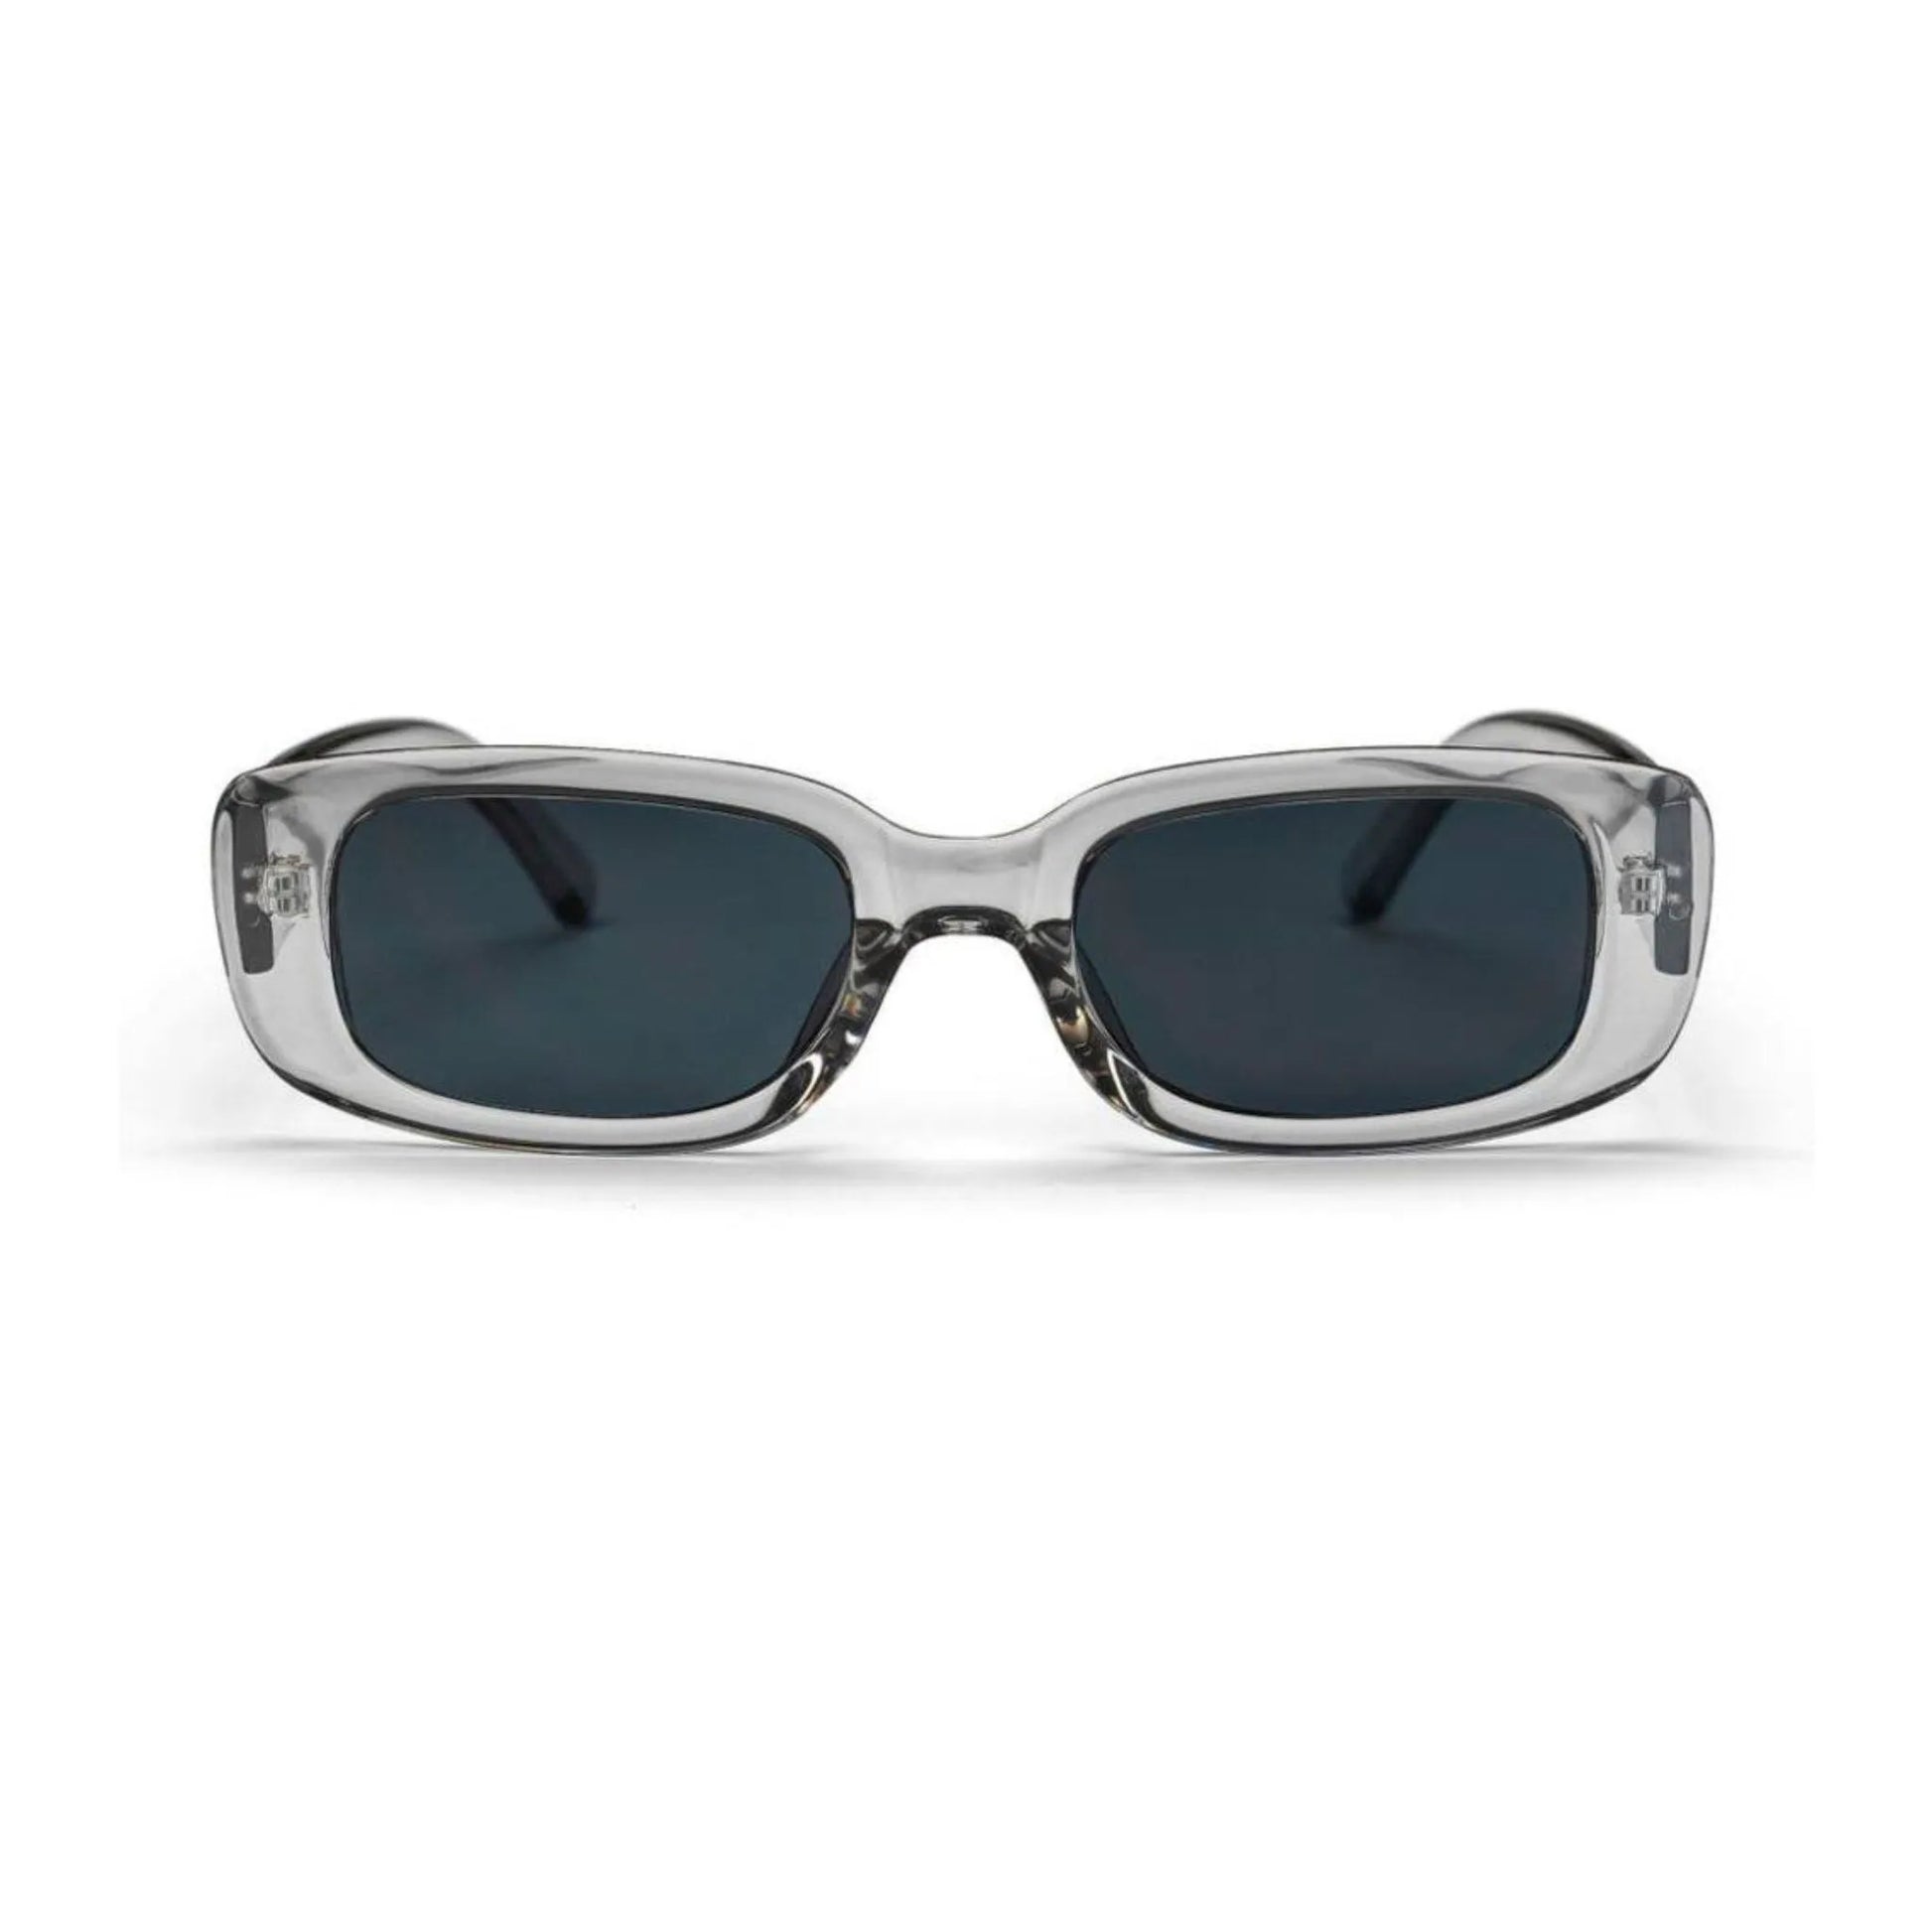 Οβάλ Γυαλιά ηλίου Kony της Exposure Sunglasses με προστασία UV400 σε ασημί χρώμα σκελετού και μαύρο φακό.